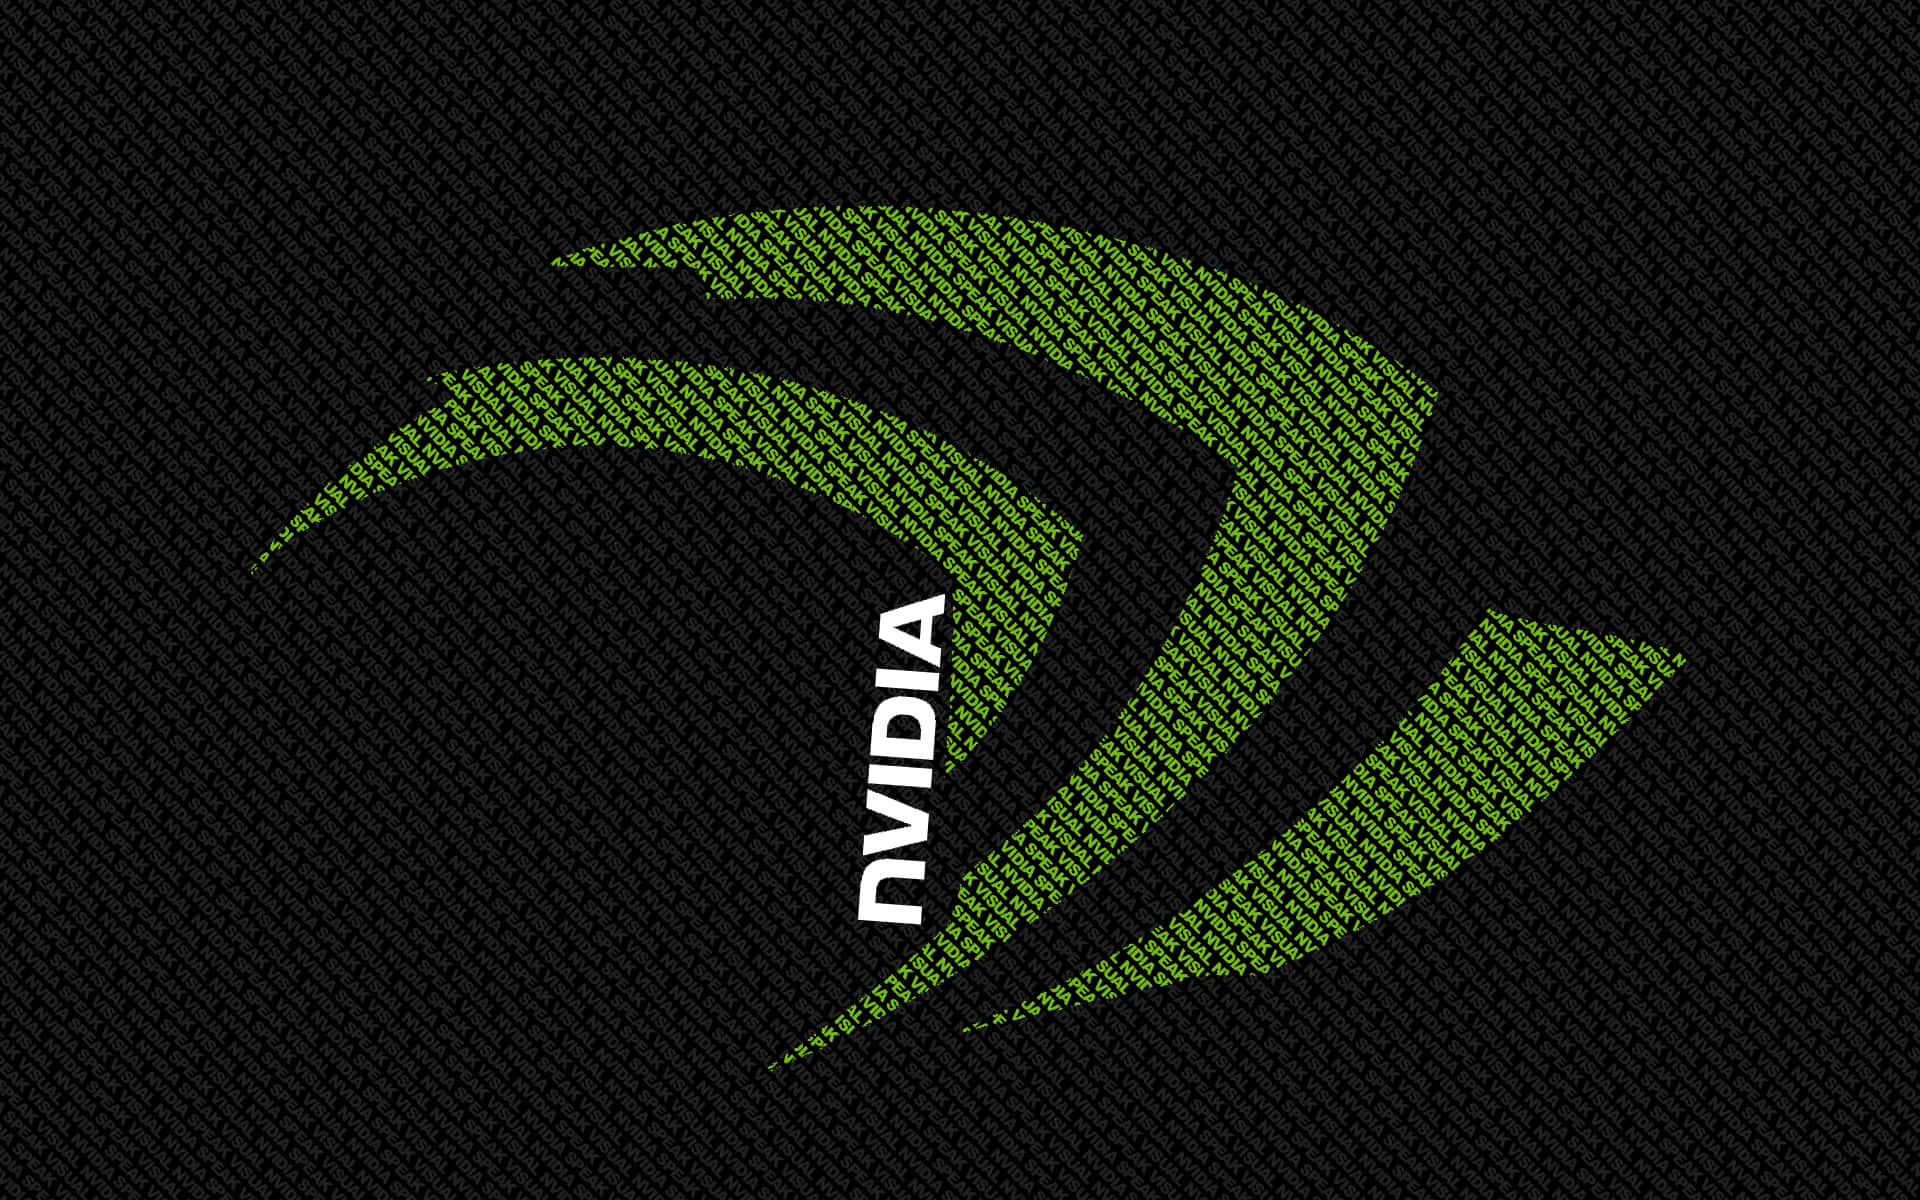 Mantentea La Vanguardia De La Competencia Con La Serie Nvidia Geforce Rtx 3000.